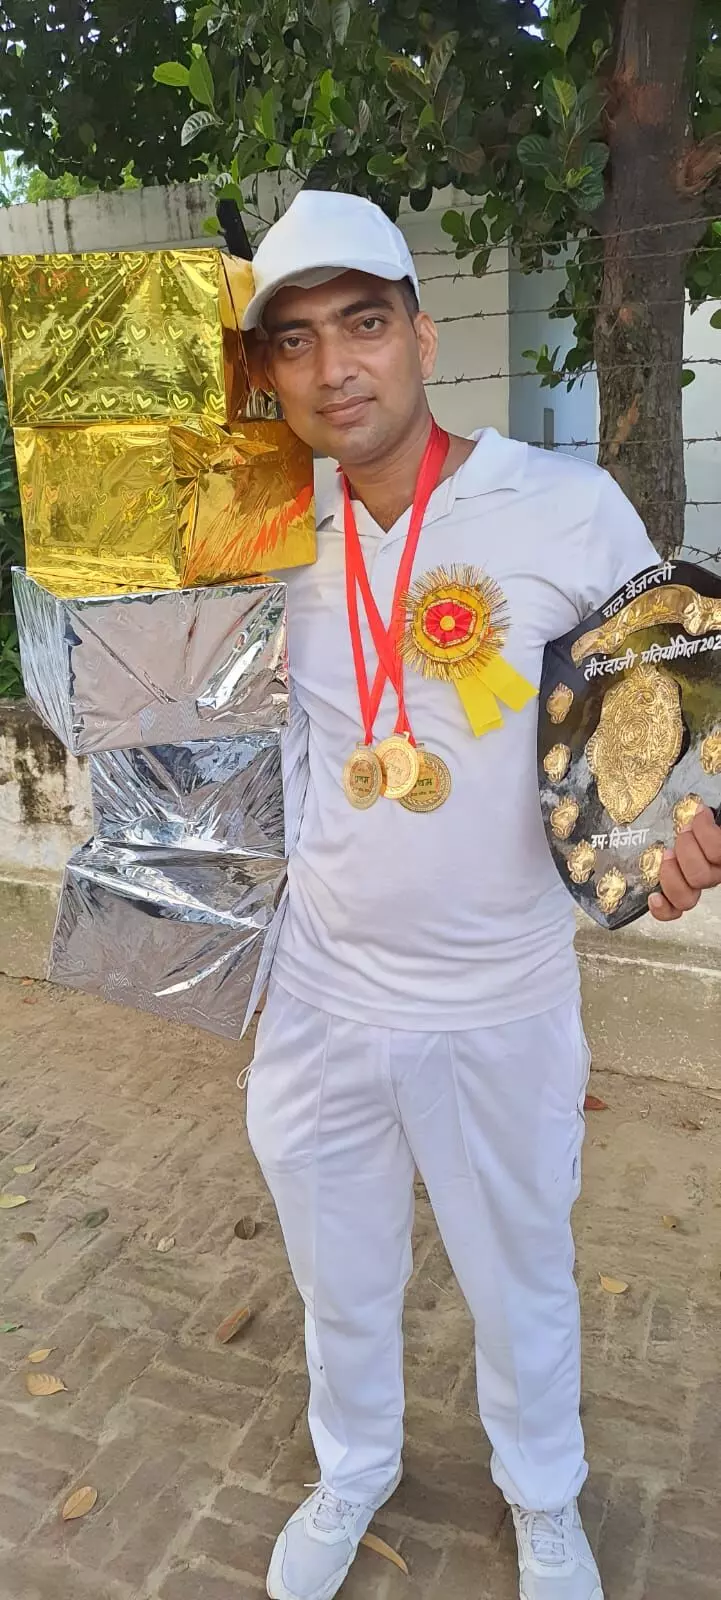 अंतर्जनपदीय आर्चरी तीरंदाजी प्रतियोगिता में जीता पदक